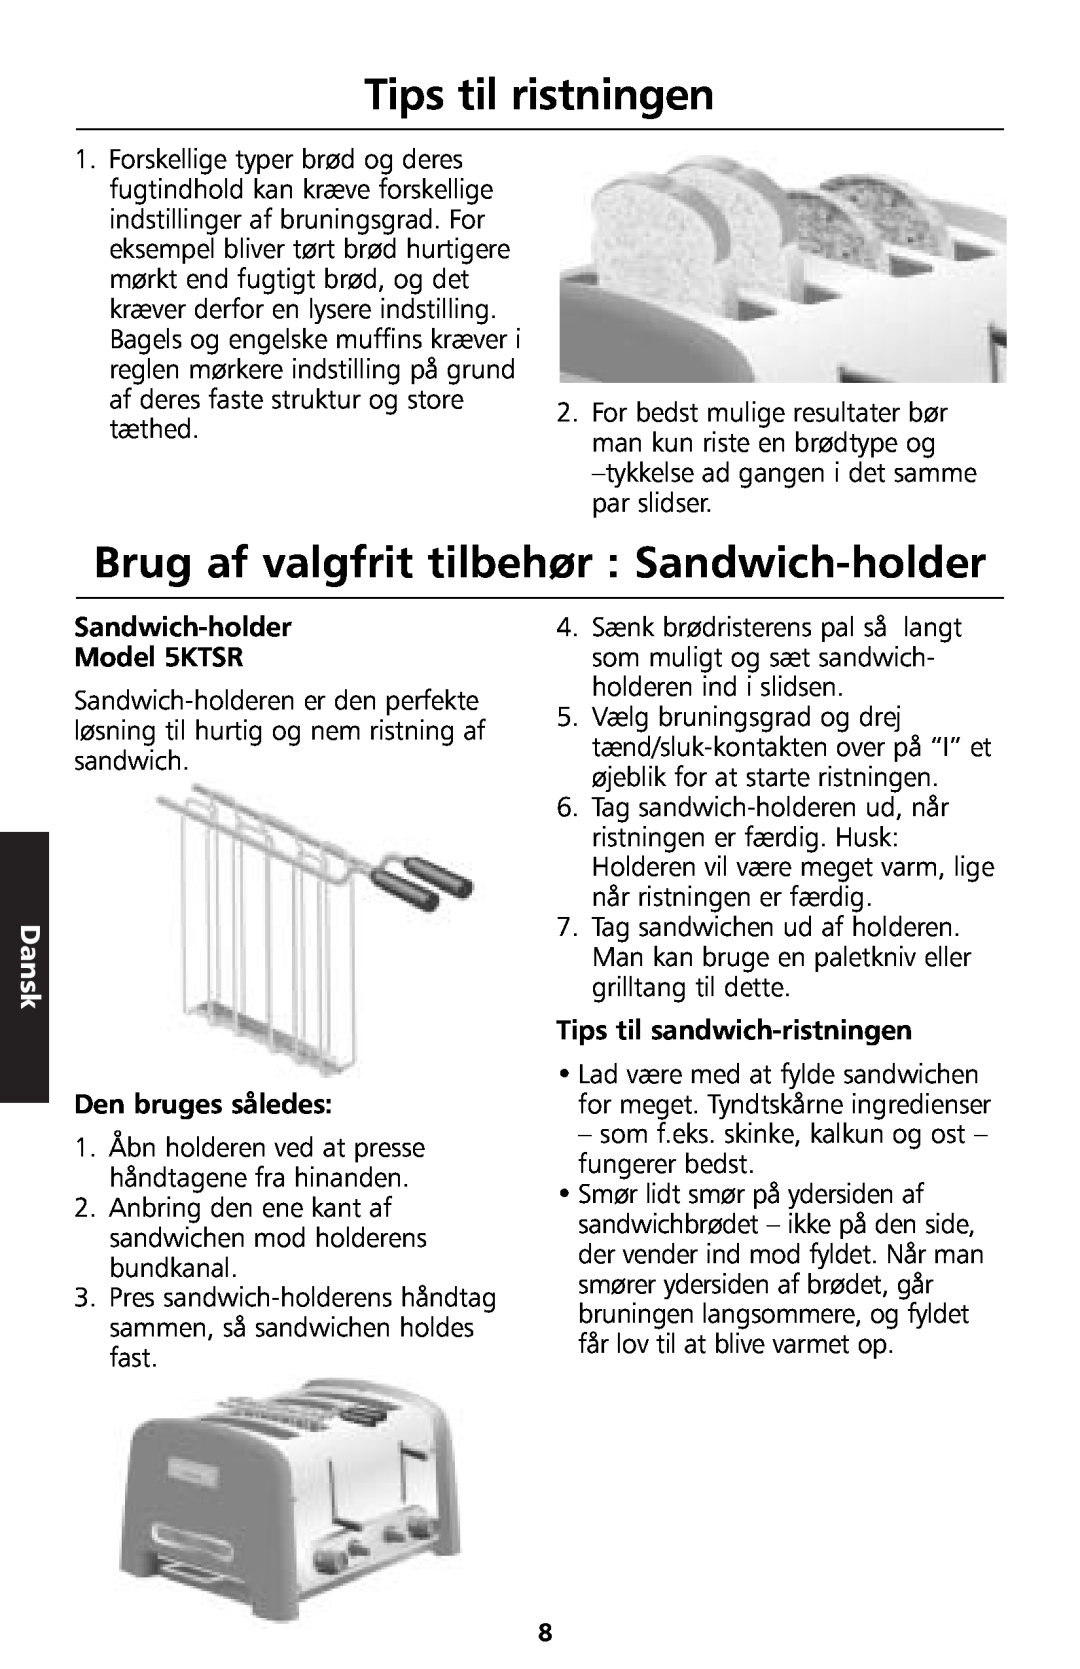 KitchenAid 5KTT890 Tips til ristningen, Brug af valgfrit tilbehør : Sandwich-holder, Dansk, Sandwich-holder Model 5KTSR 